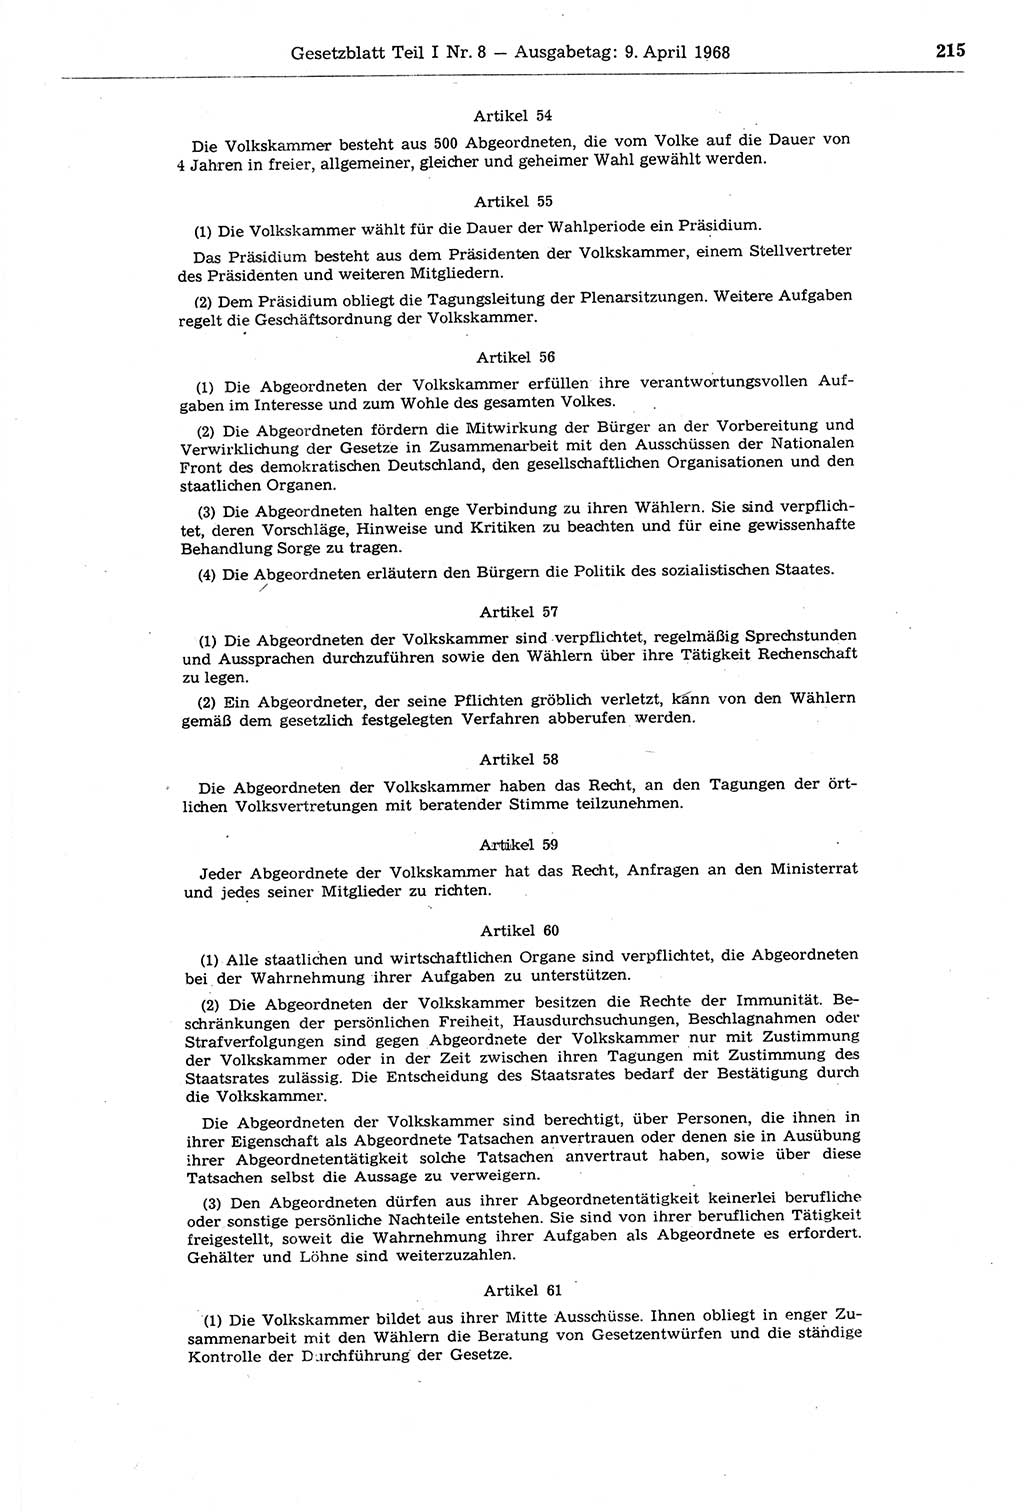 Gesetzblatt (GBl.) der Deutschen Demokratischen Republik (DDR) Teil Ⅰ 1968, Seite 215 (GBl. DDR Ⅰ 1968, S. 215)